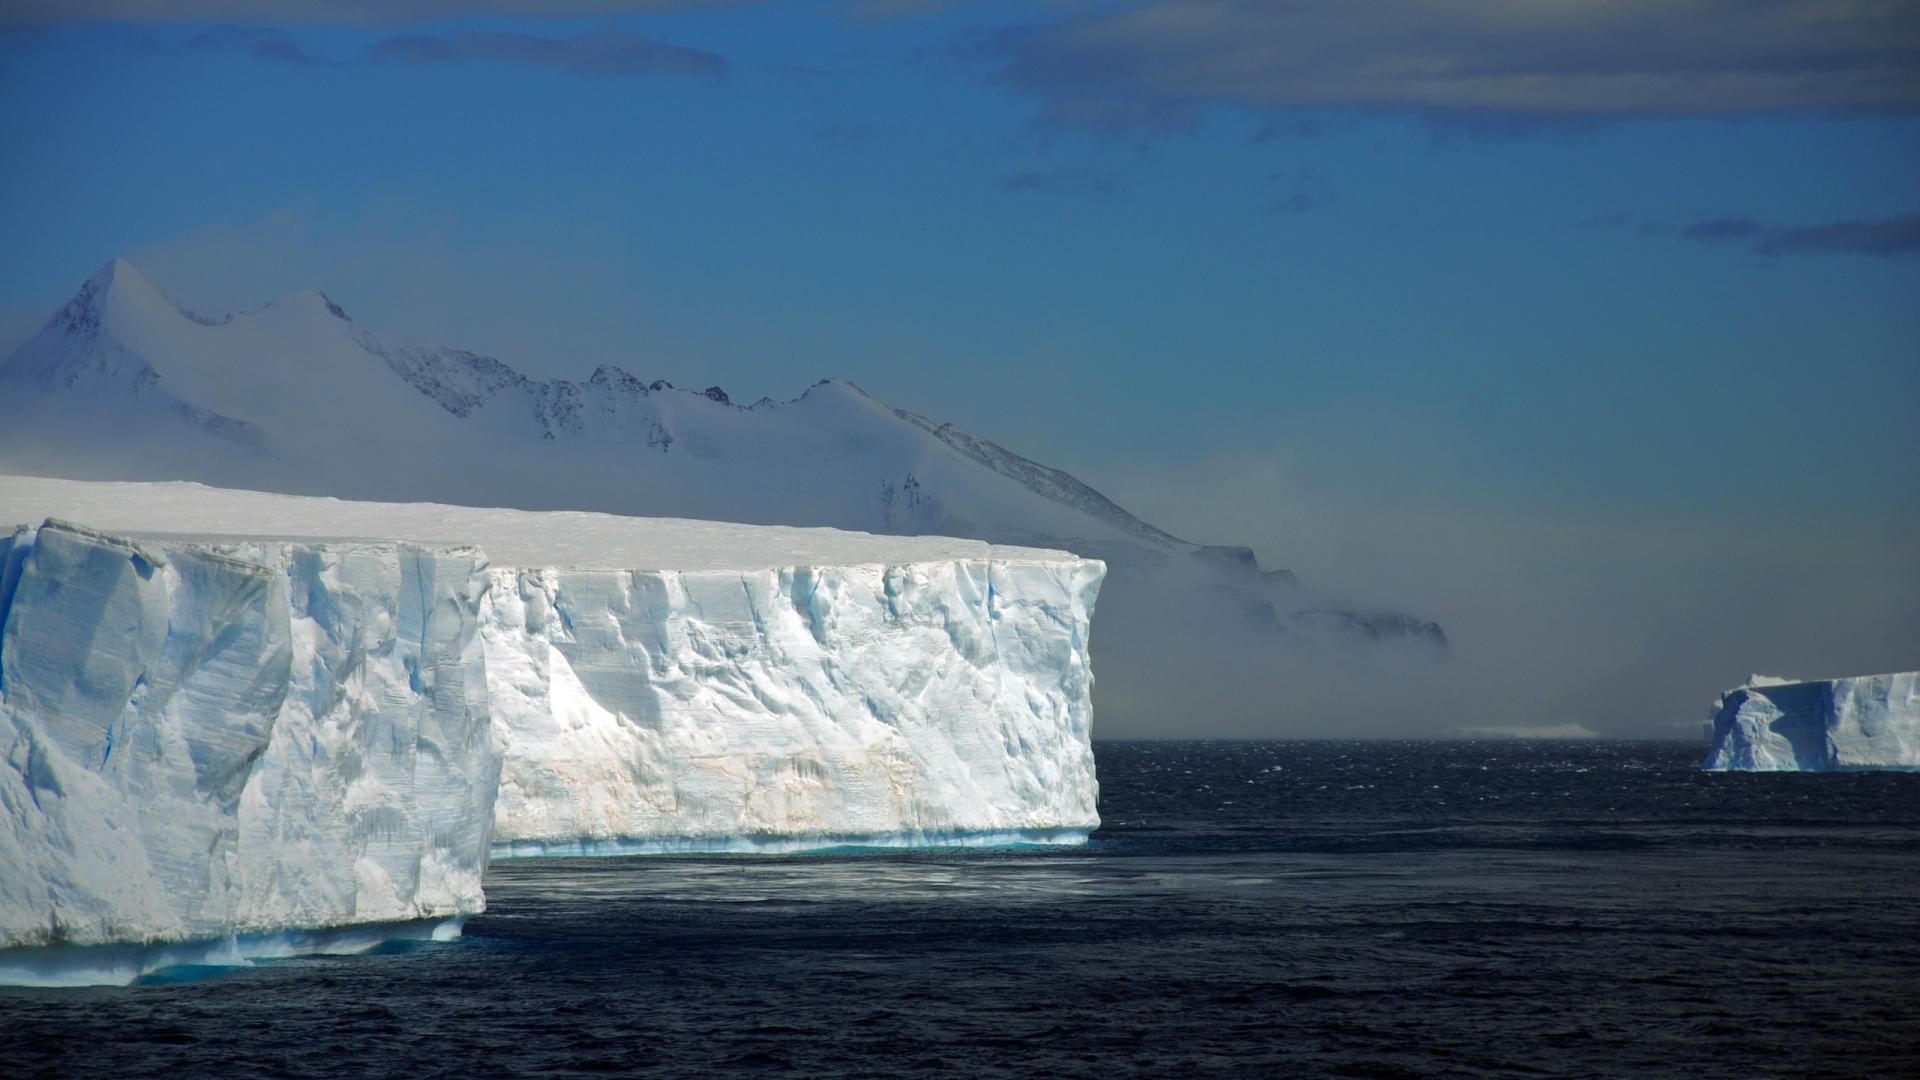 Best Antarctica Backgrounds on HipWallpapers